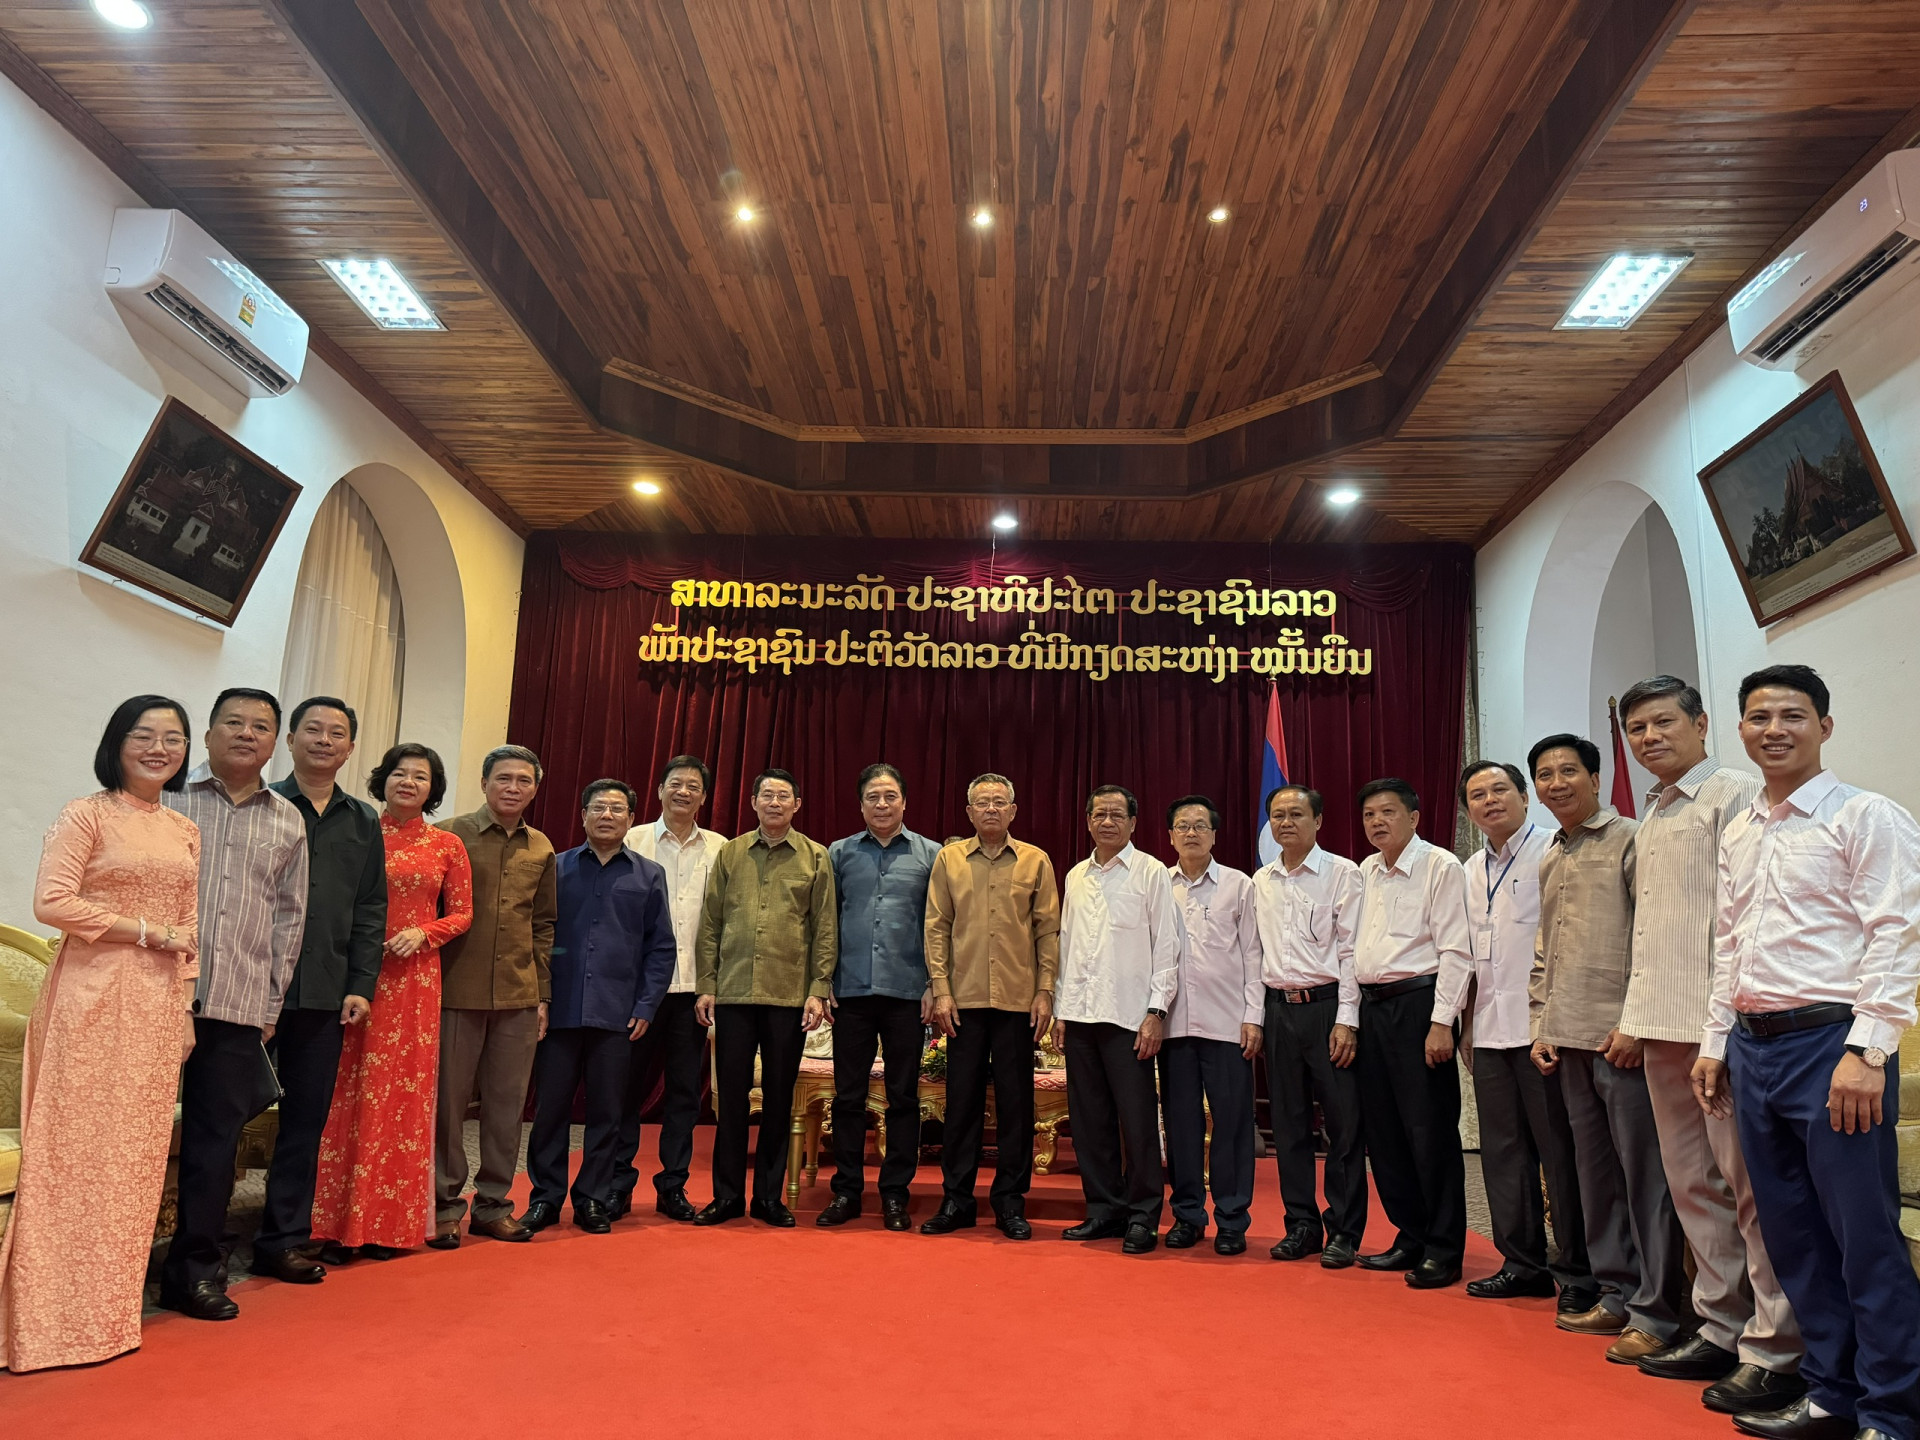 Đoàn đại biểu tỉnh Khánh Hòa chụp hình lưu niệm với lãnh đạo tỉnh Luang Prabang